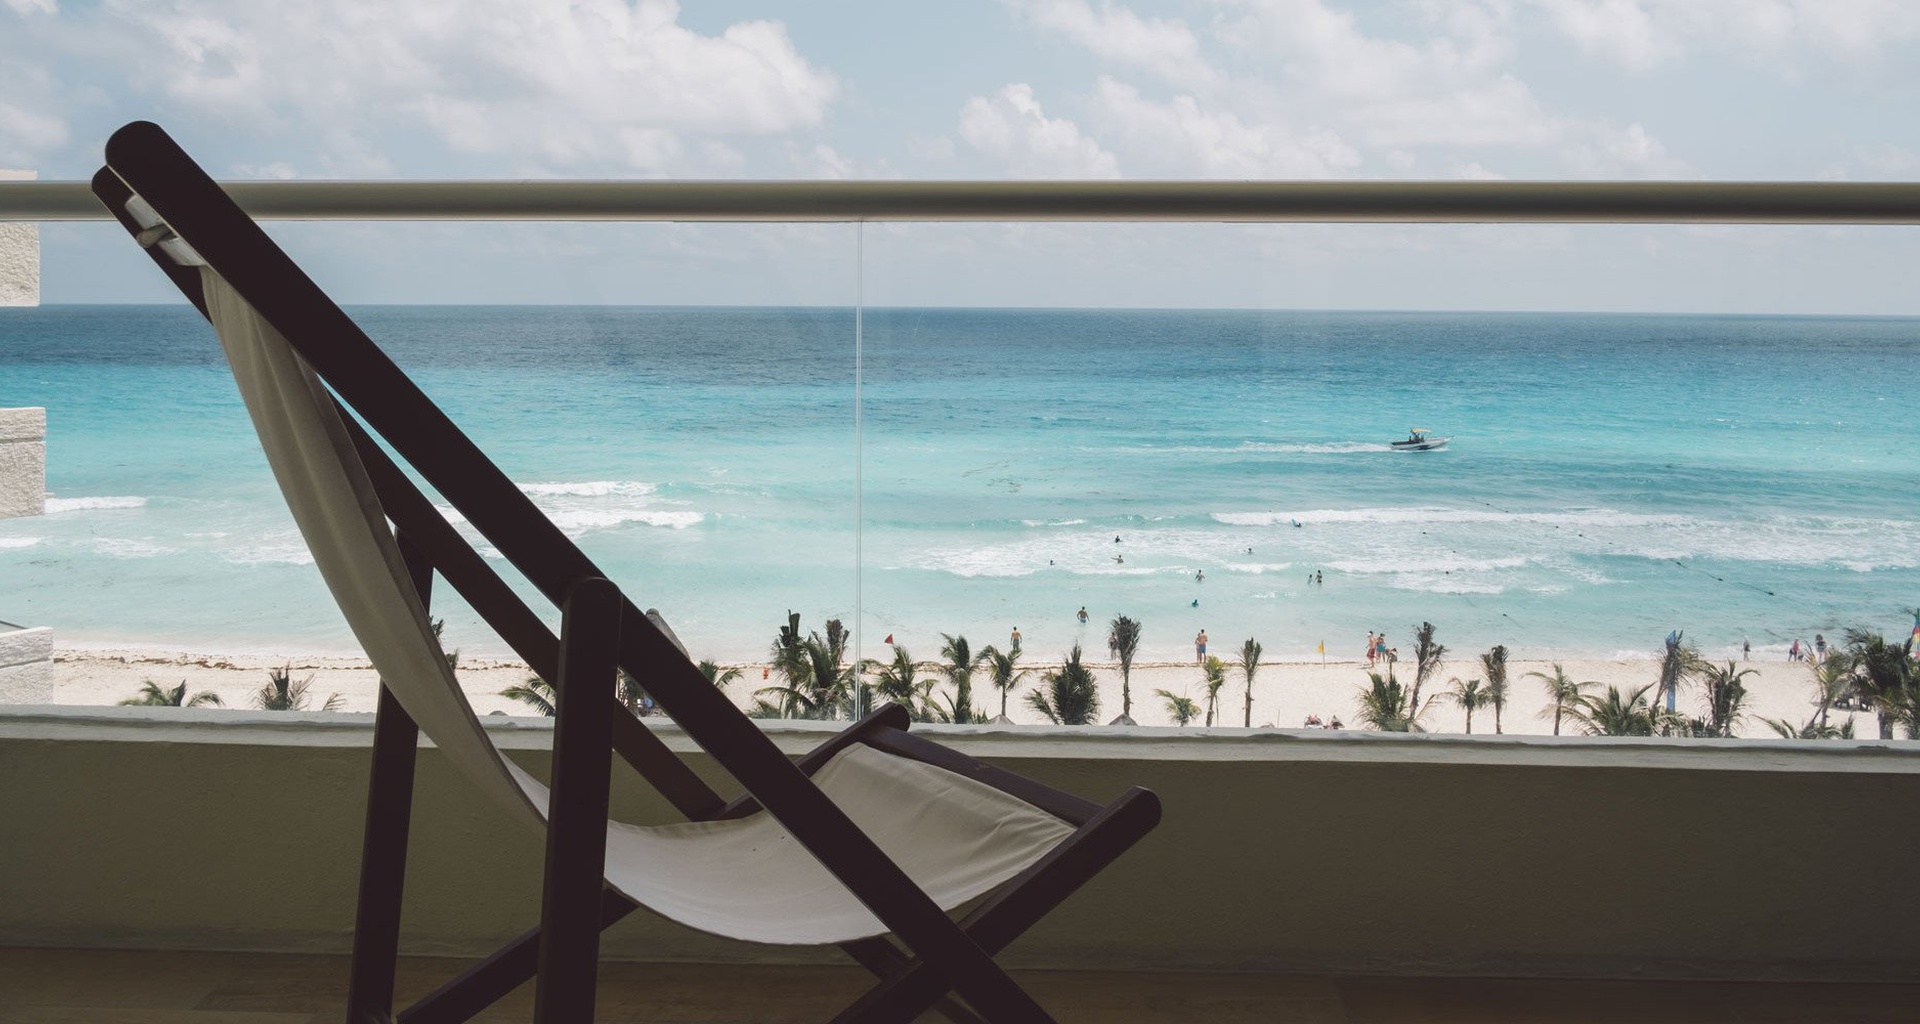 Master suite NYX HOTEL CANCUN Cancun